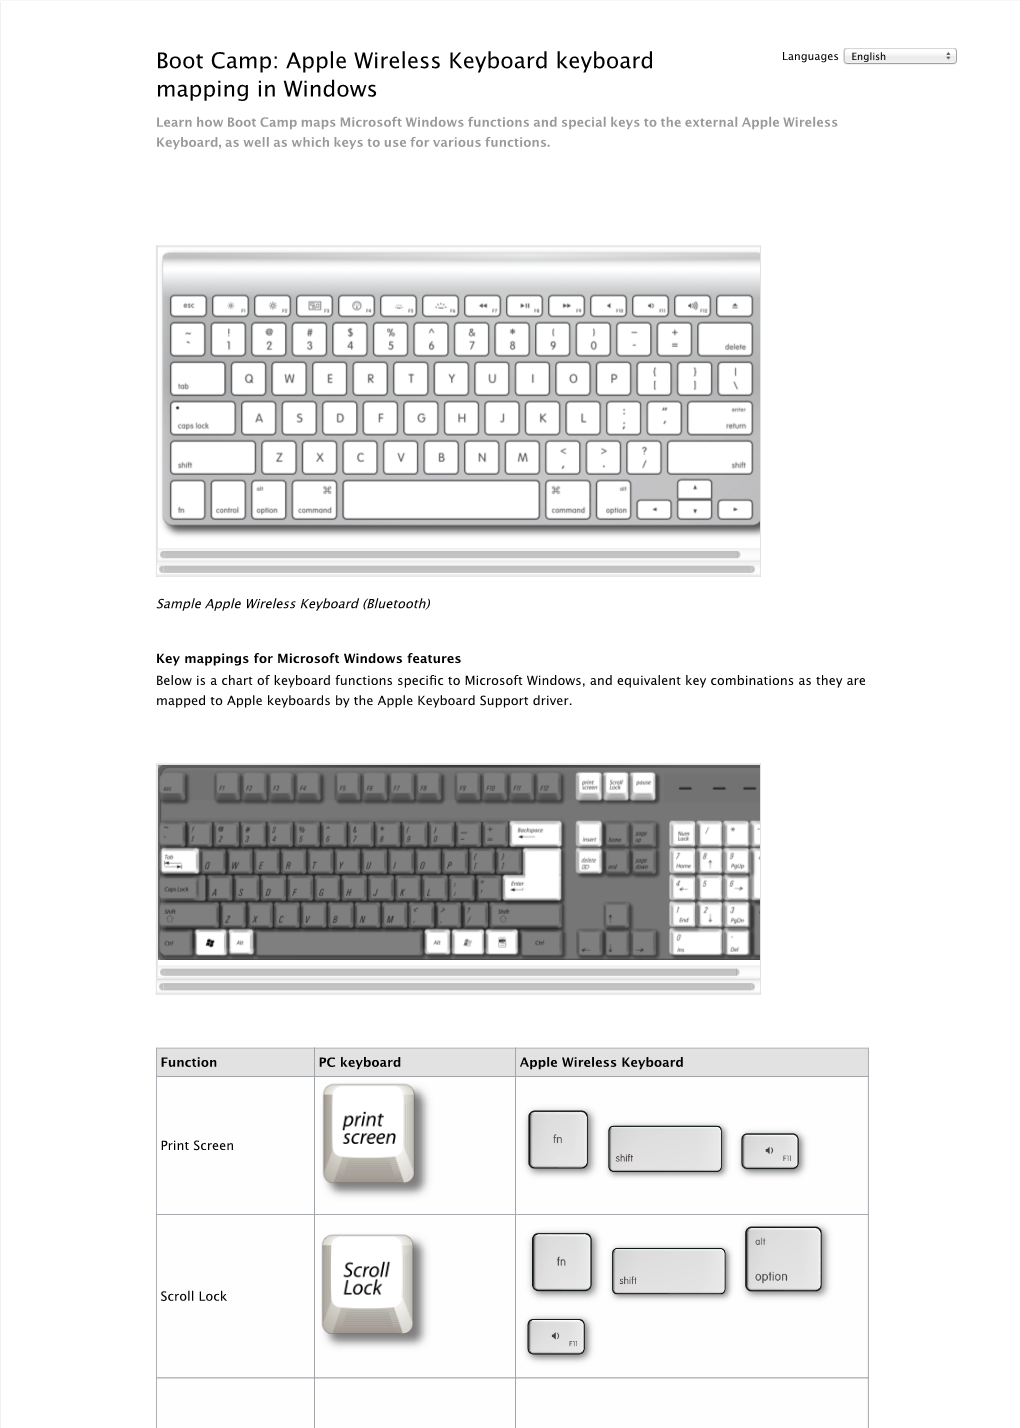 Boot Camp: Apple Wireless Keyboard Keyboard Mapping in Windows